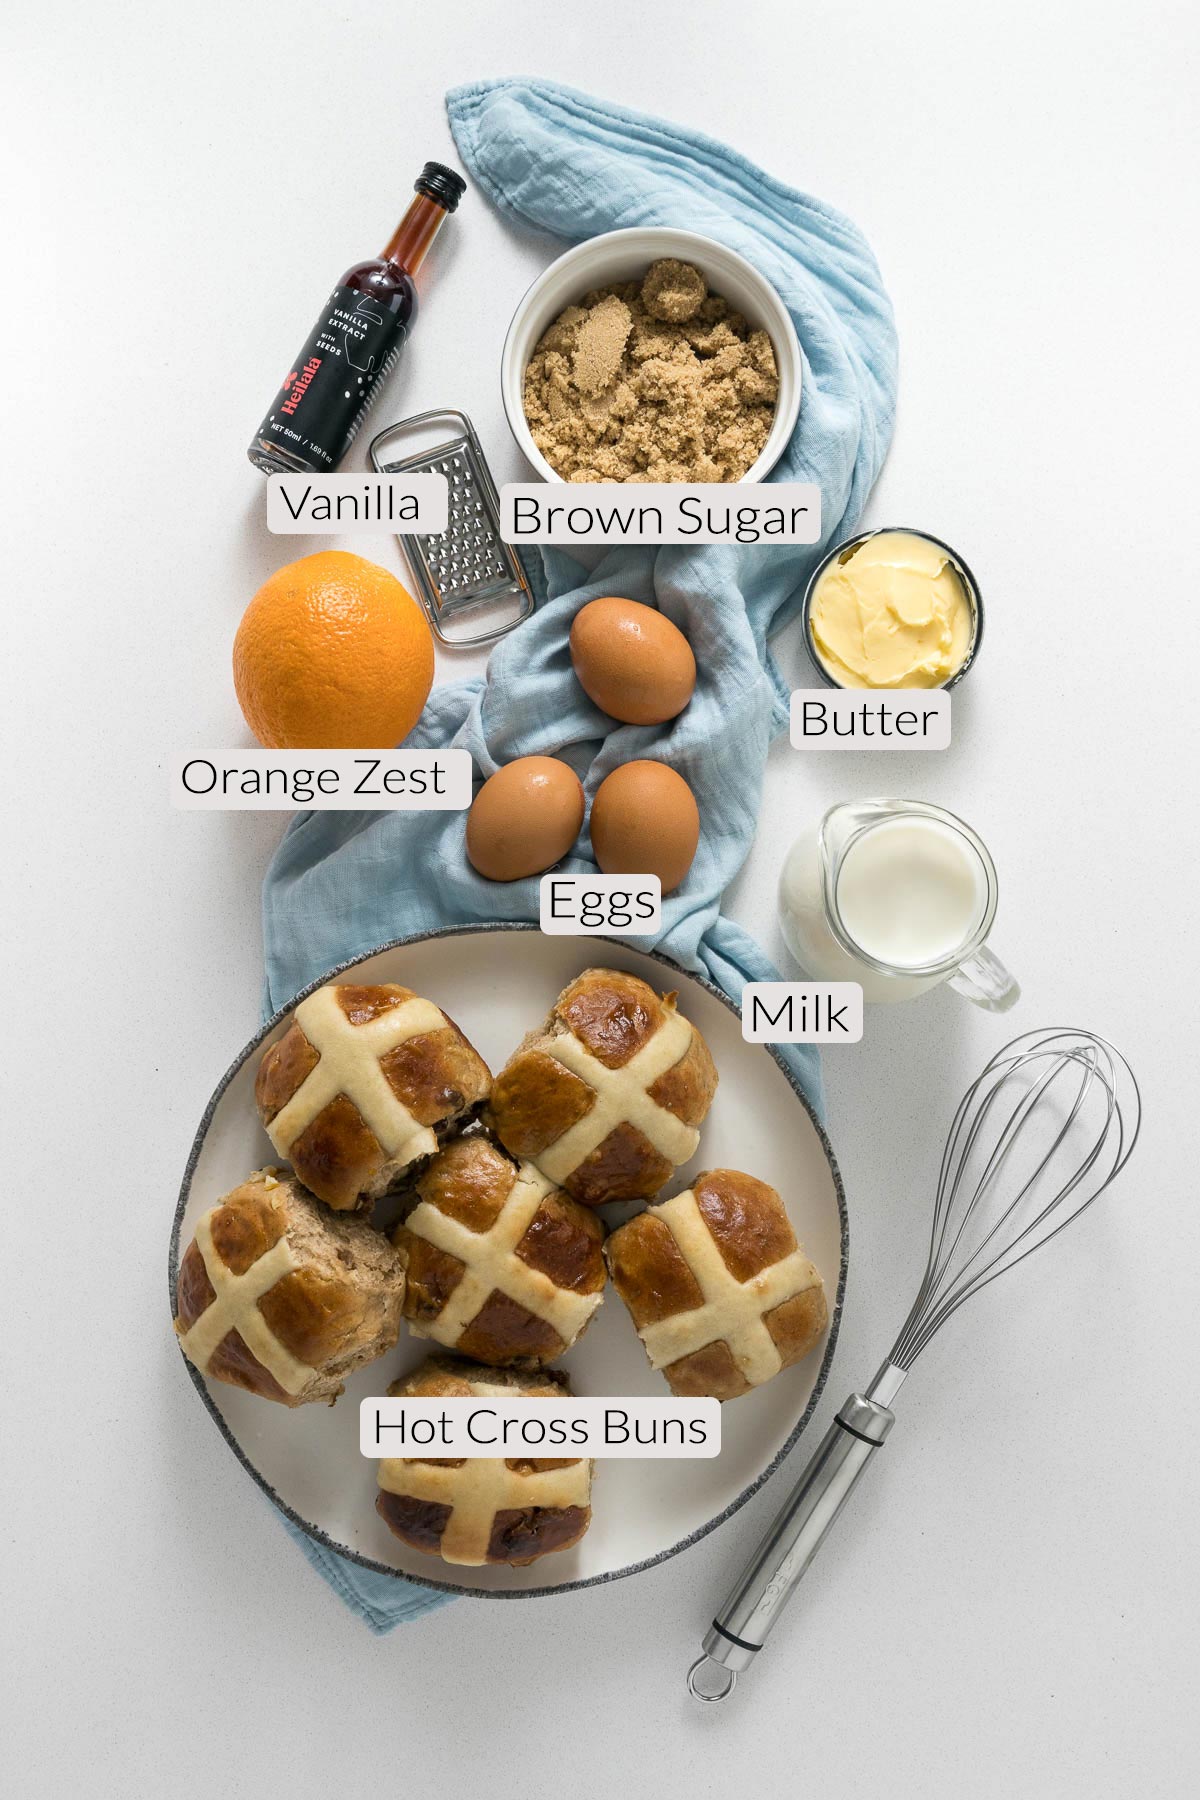 Hot cross bun pudding ingredients - hot cross buns, sugar, orange zest, eggs, butter, milk.